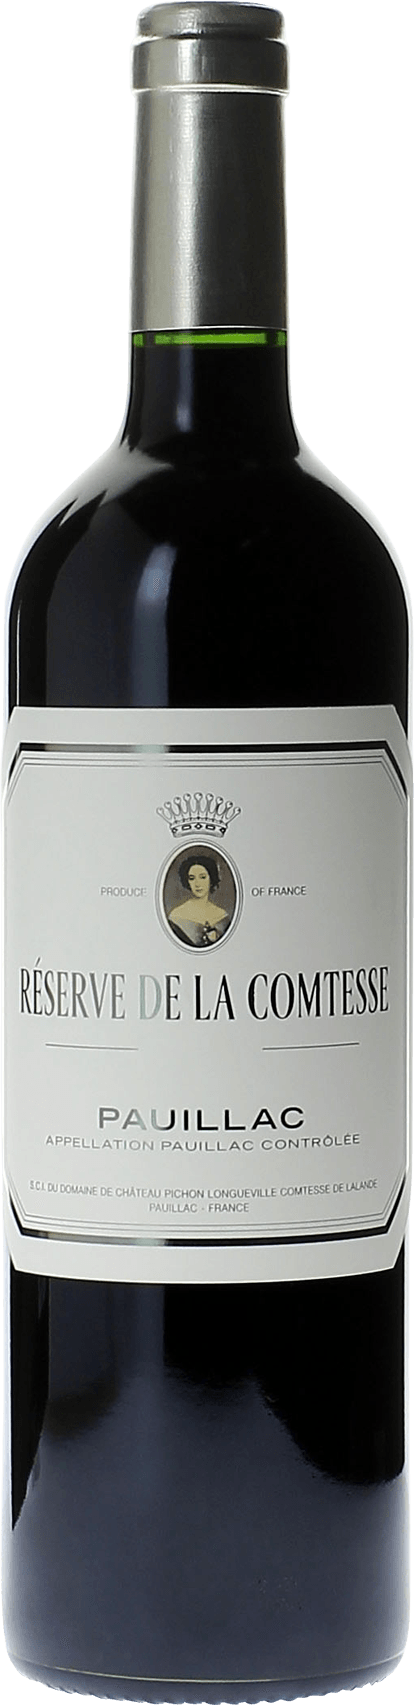 Reserve de la comtesse 2018 2nd Vin de Pichon Comtesse Pauillac, Bordeaux rouge